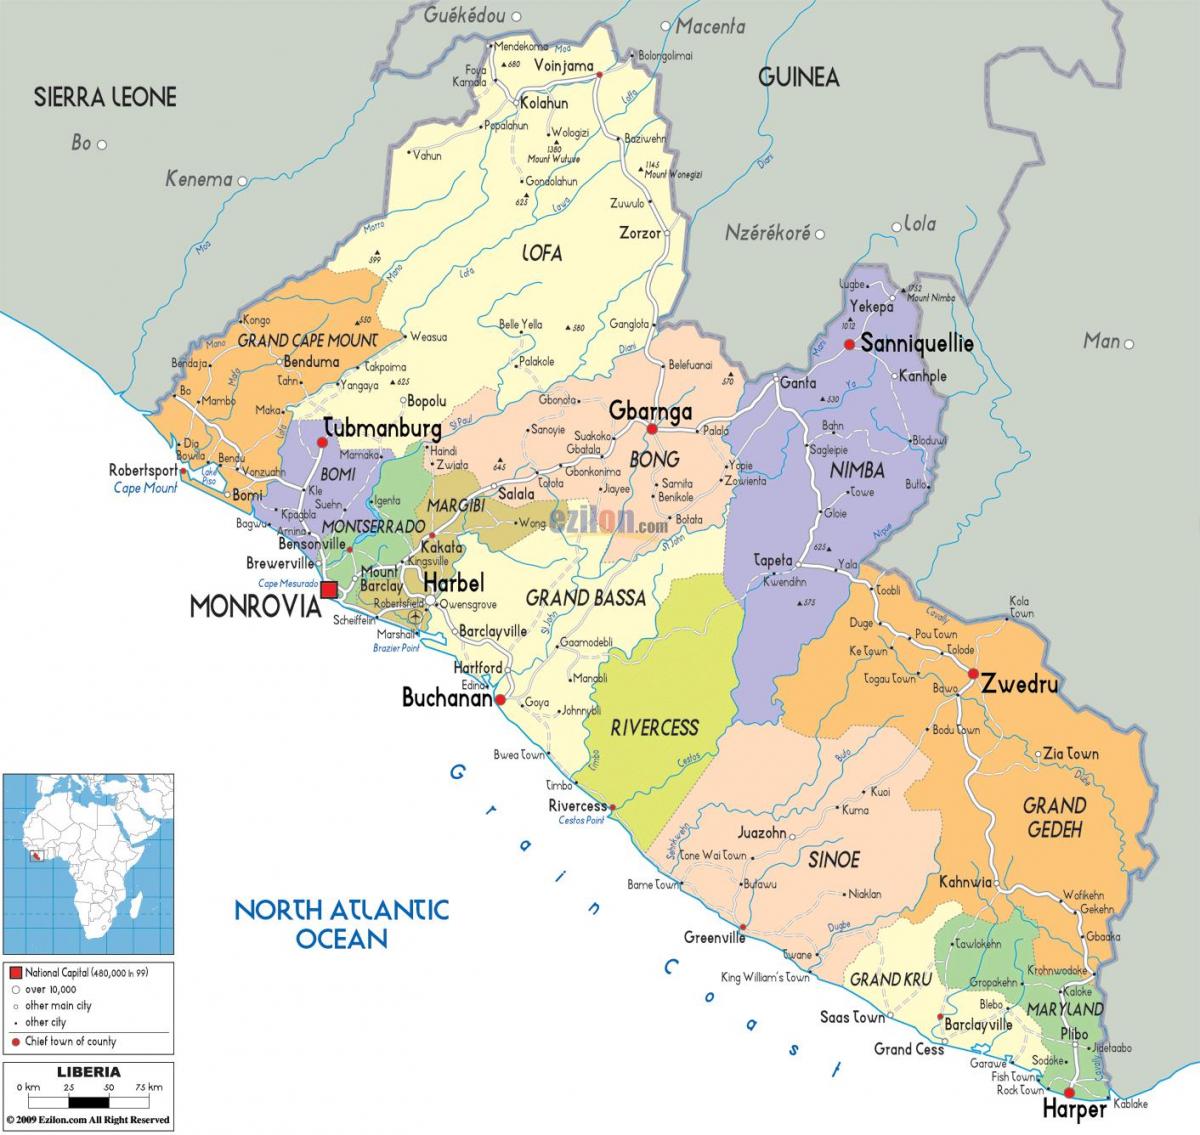 χάρτης της Λιβερίας χώρα